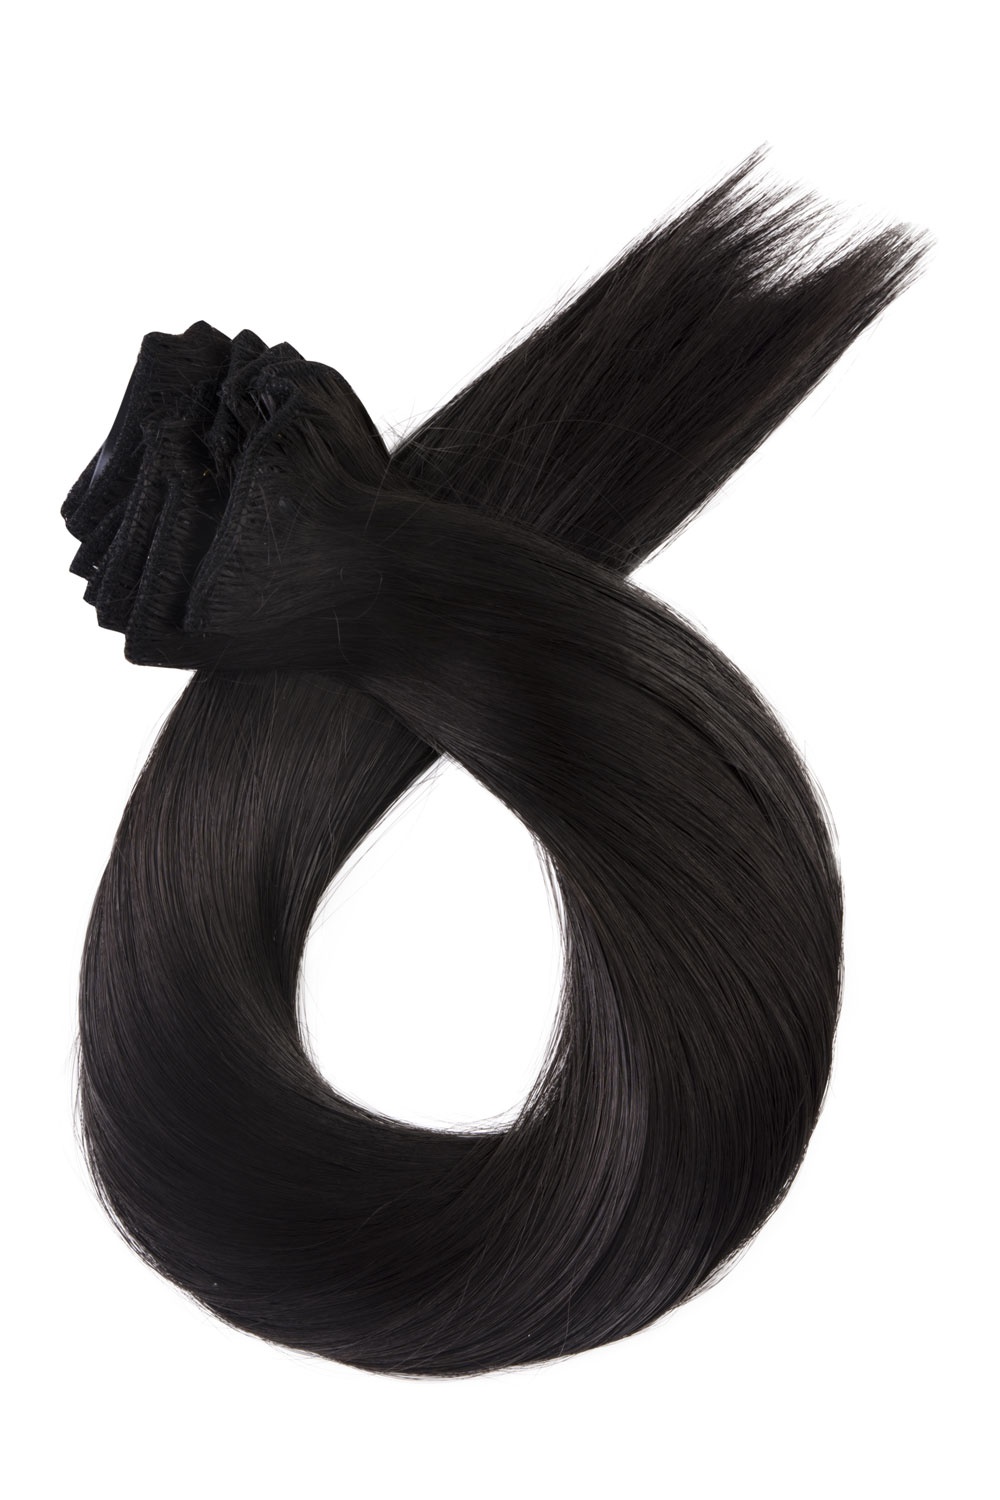 Tmavo hnedé clip in vlasy, 60cm, 150g, farba 2